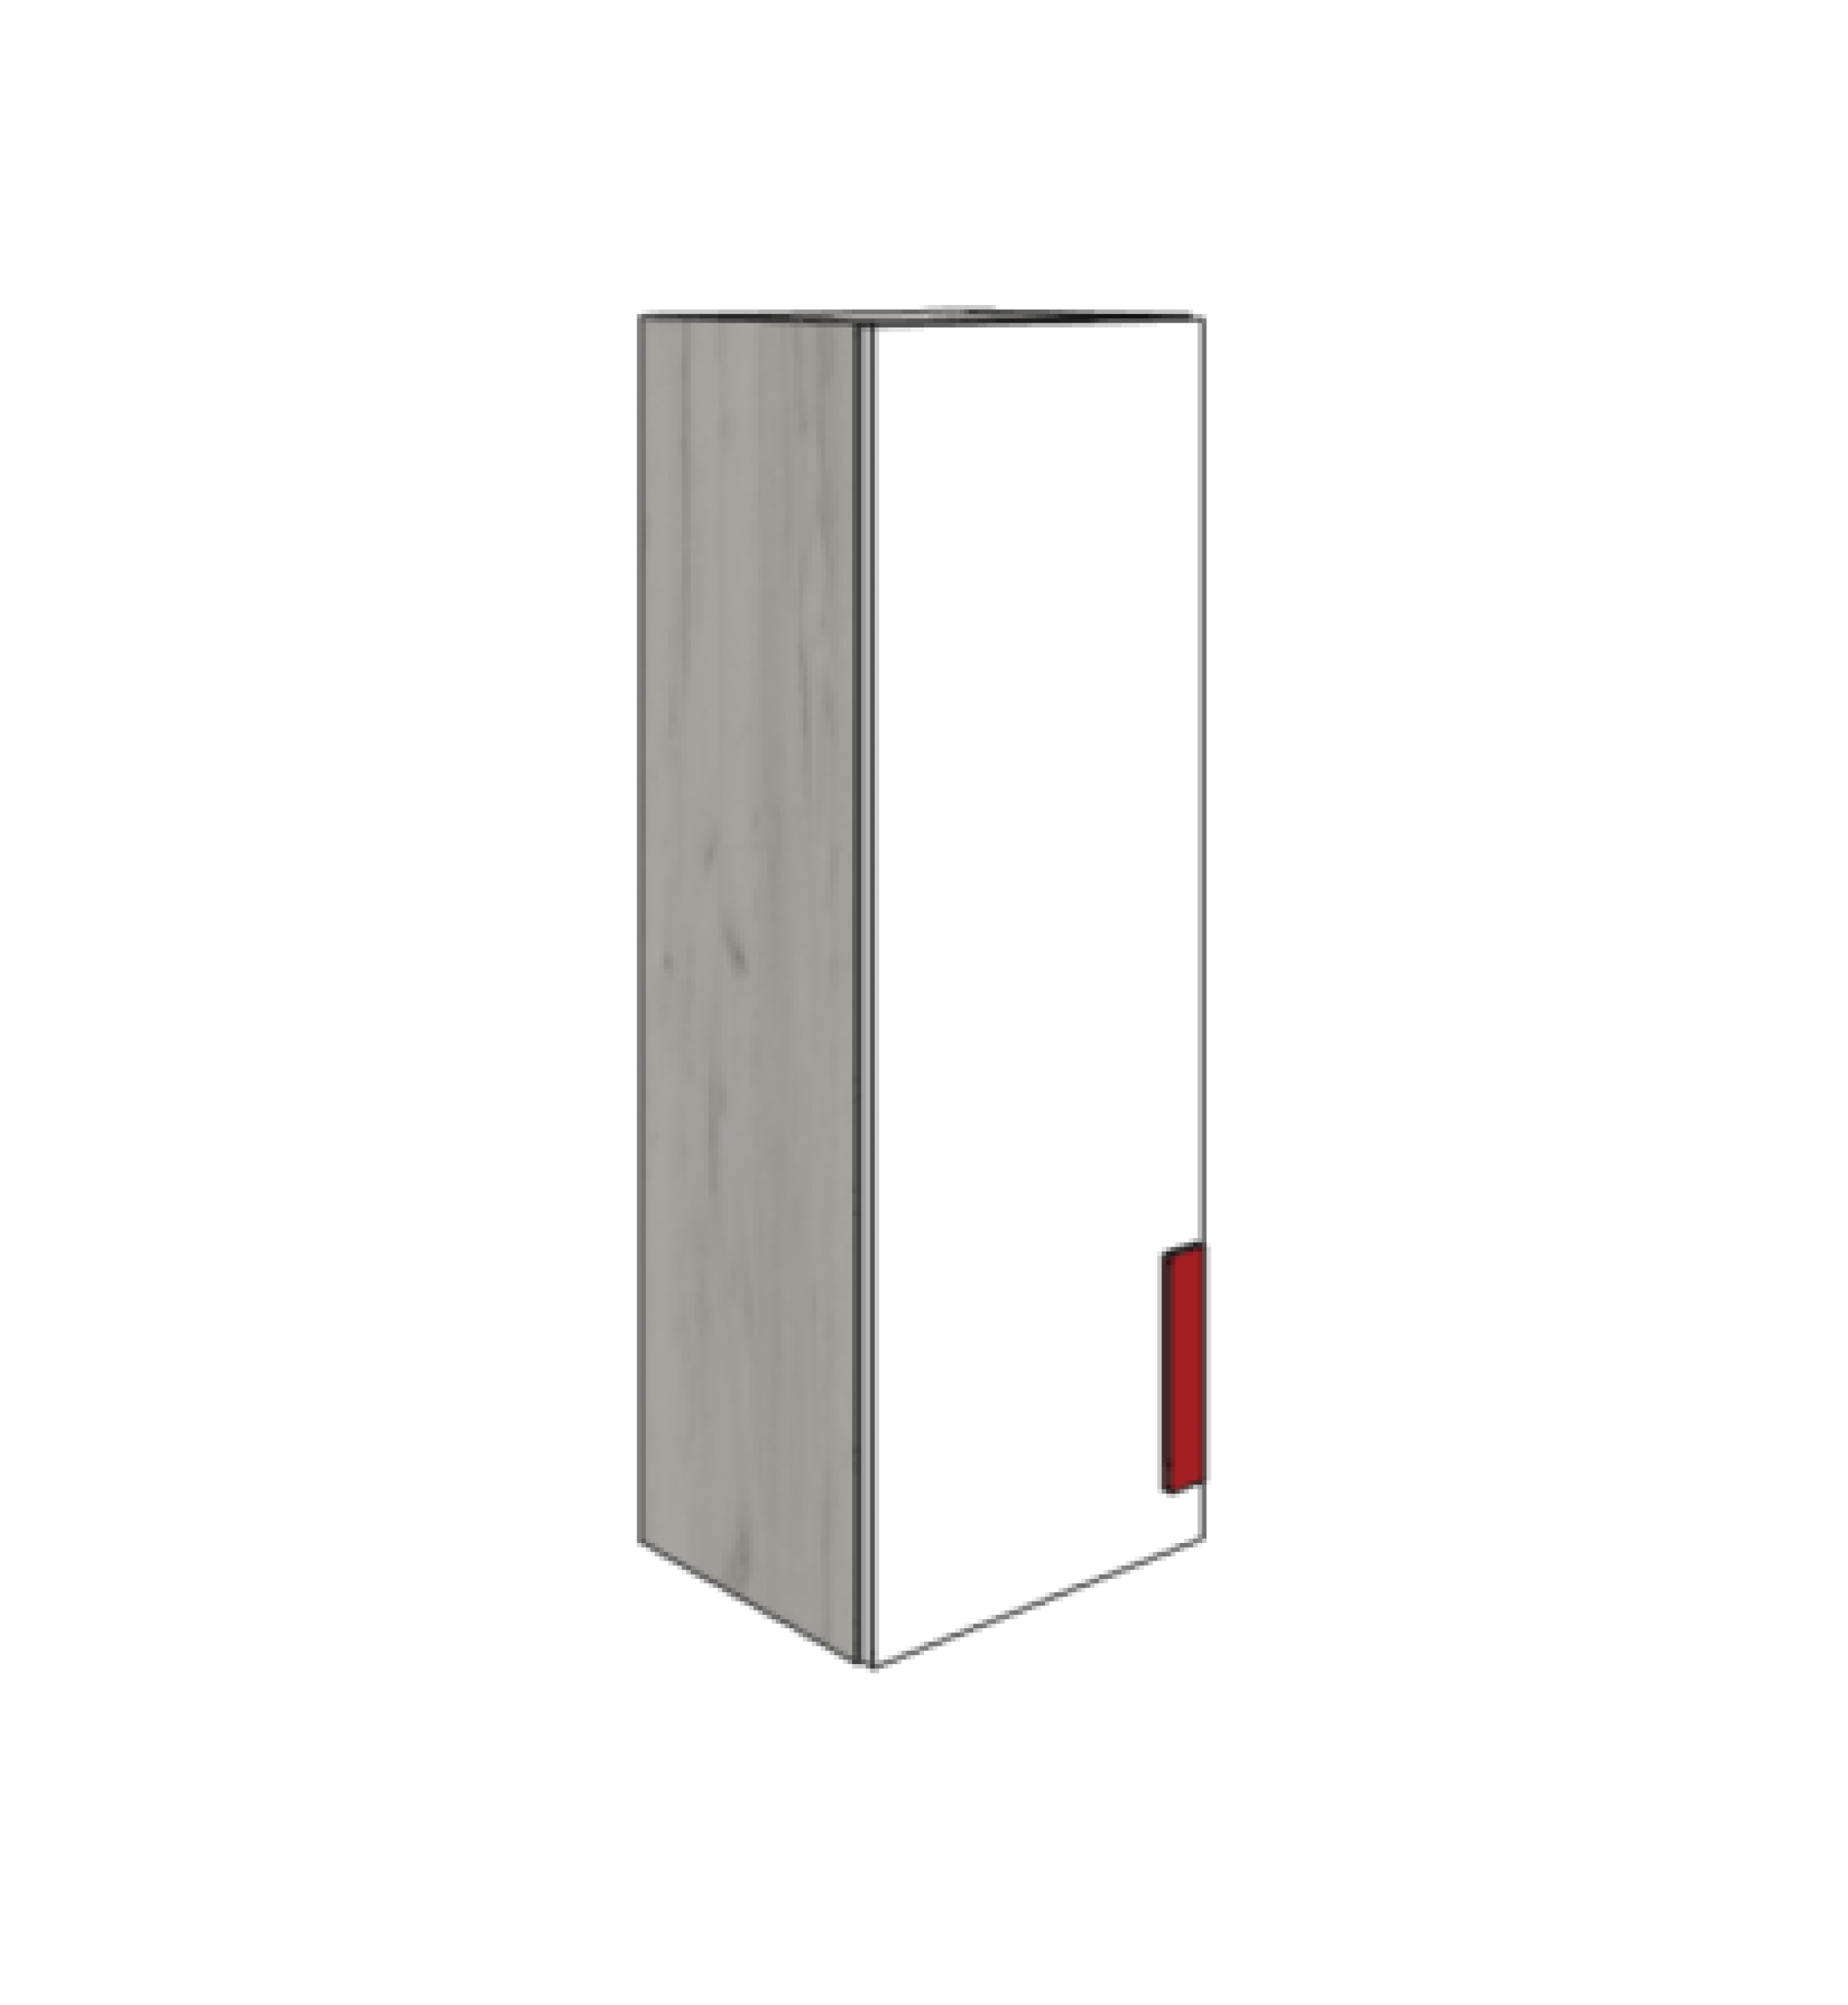 Klюkva шкаф навесной, вертикальный. арт: MC_05L/R